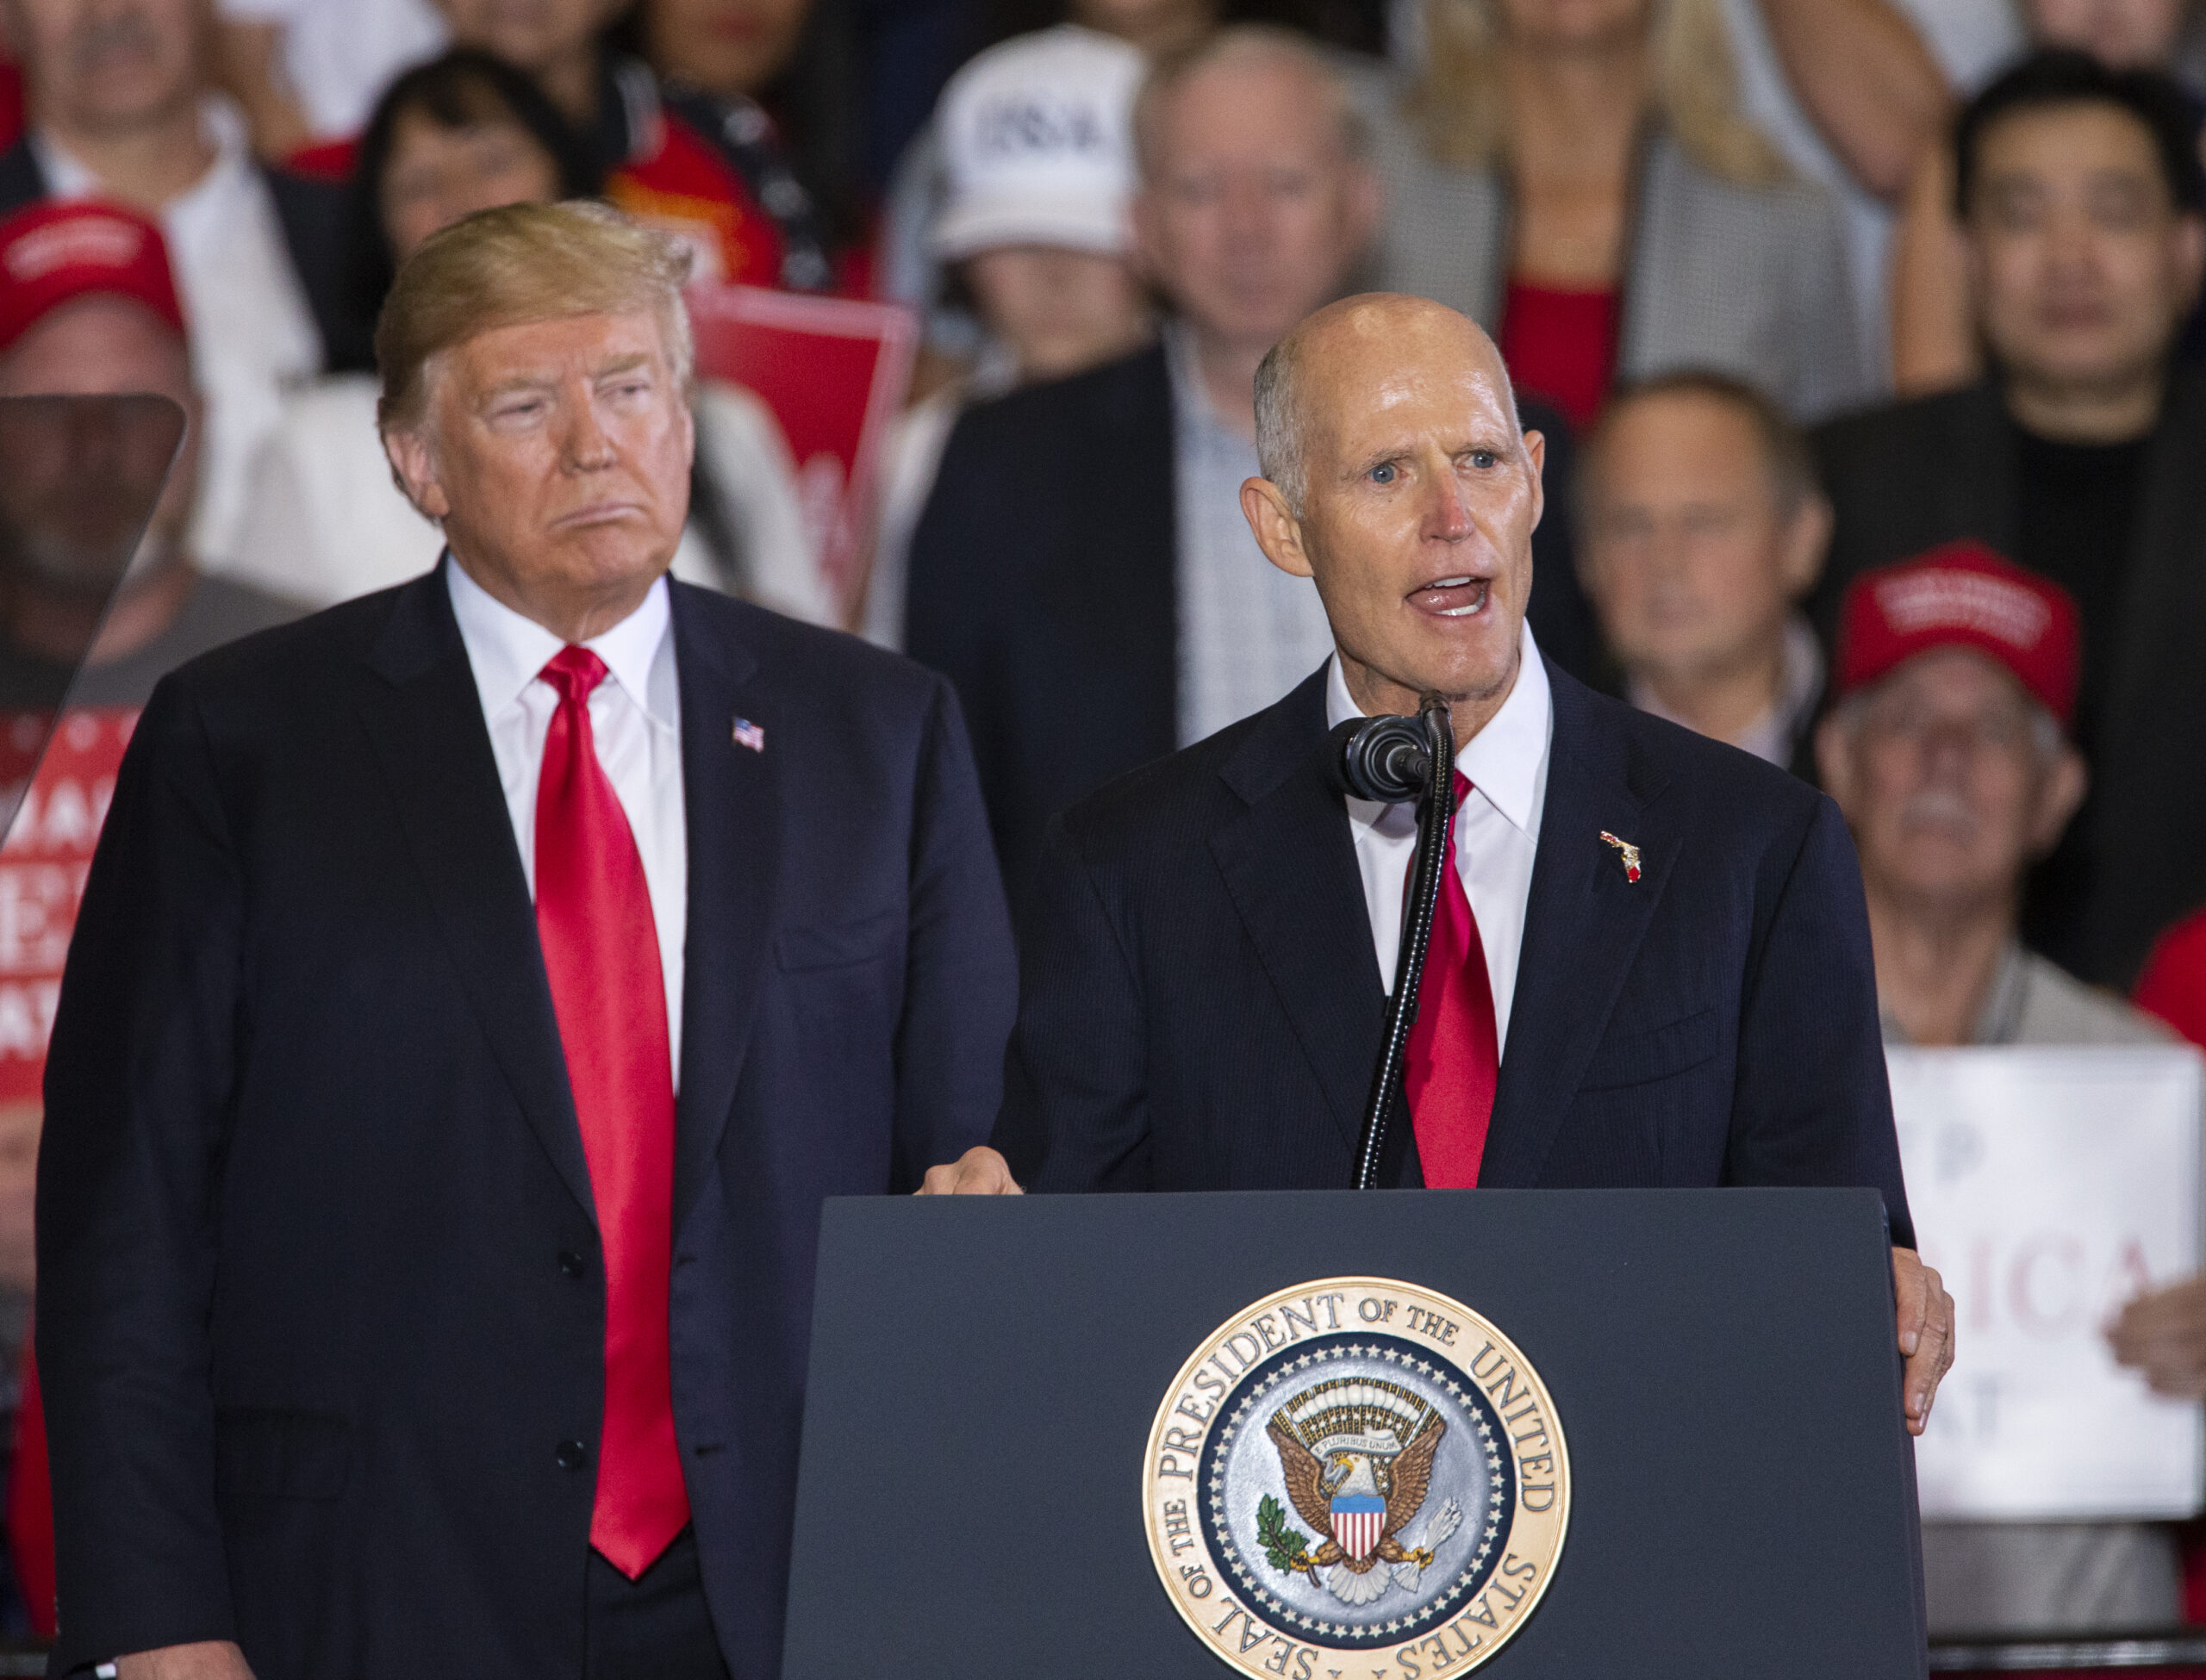 Florida Sen. Rick Scott Endorses Trump For President, Says GOP Should ‘Unite’